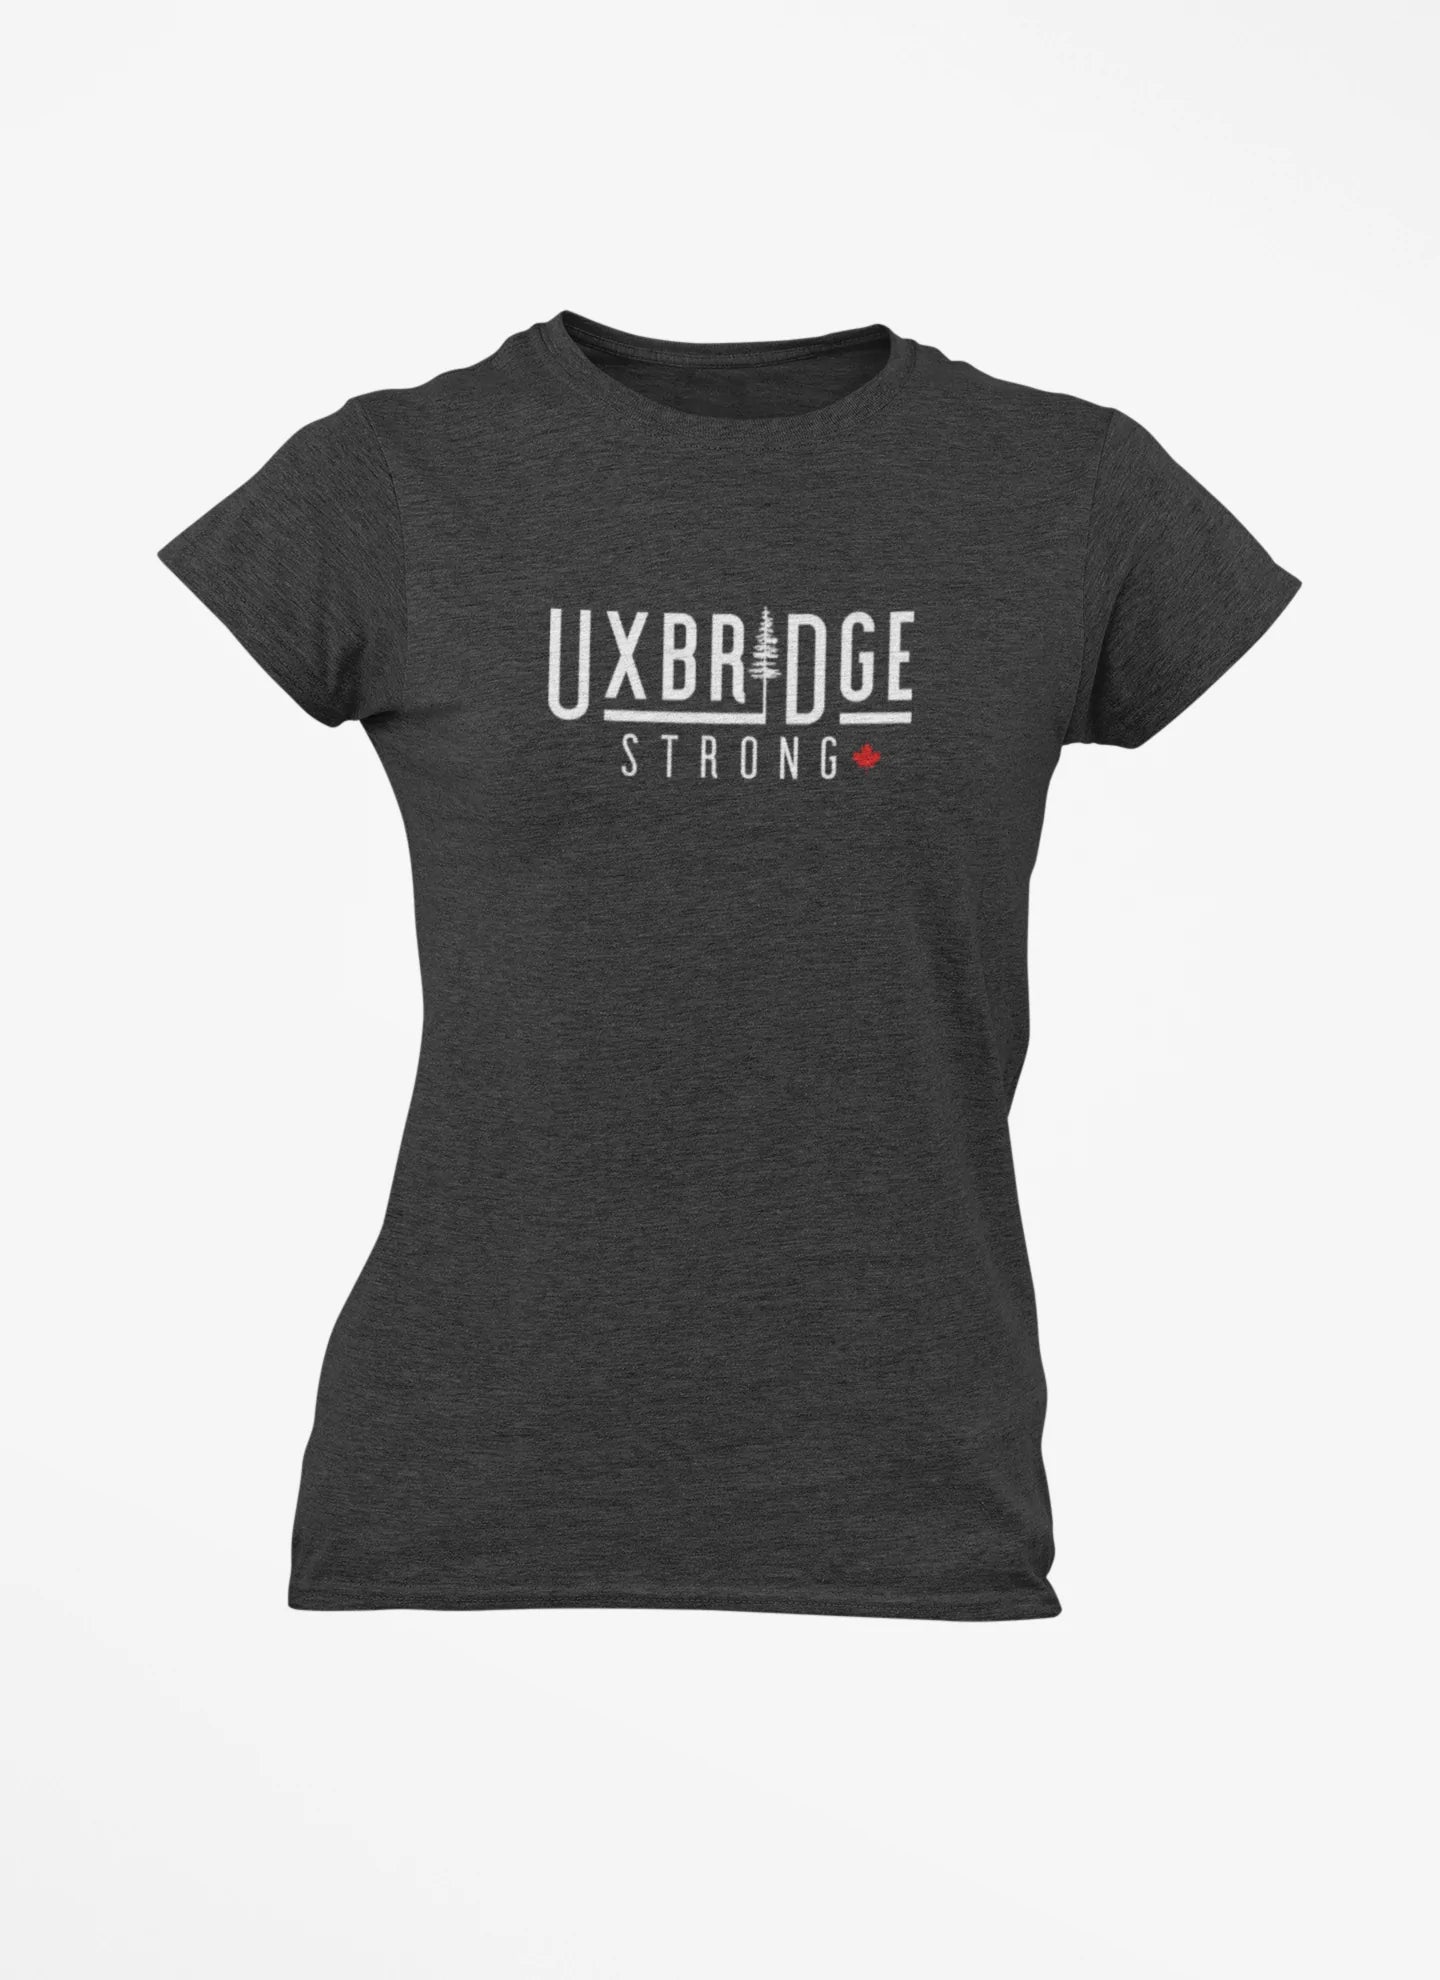 Women's - Uxbridge Strong T-Shirt